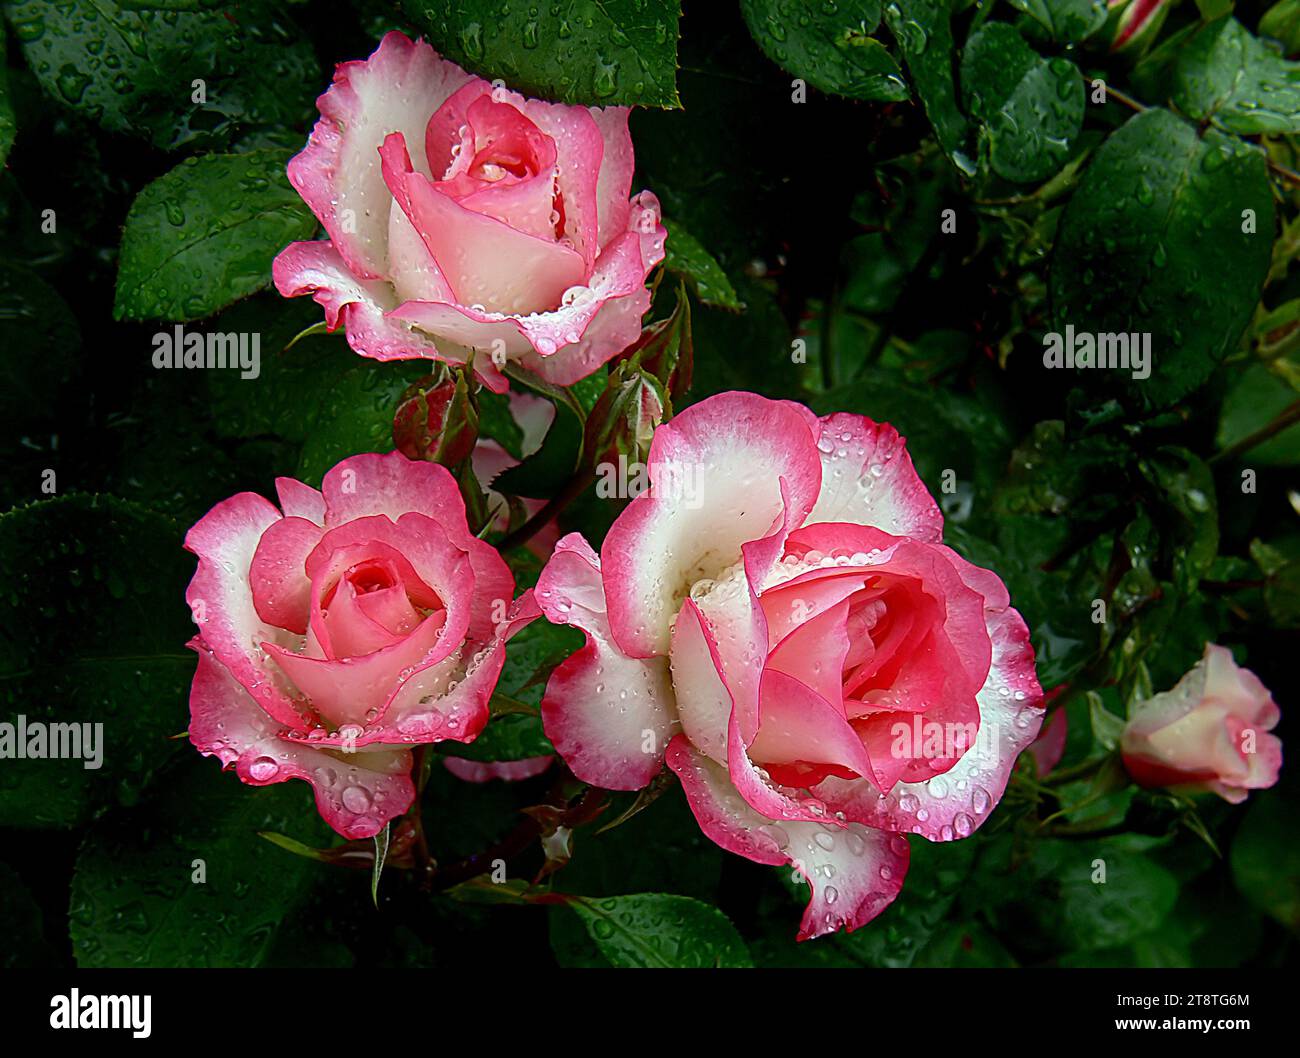 Himbeereis, eine aufmerksame Blumenbunda-Rose mit einer sich ausbreitenden, offenen Gewohnheit, die Sprays von atemberaubenden, rosa und weiß schalen Blüten erzeugt, die dramatisch rot umrandet sind; dichtes dunkelgrünes Laub bietet den perfekten Kontrast, um diesen Sträucher wirklich hervorzuheben Stockfoto